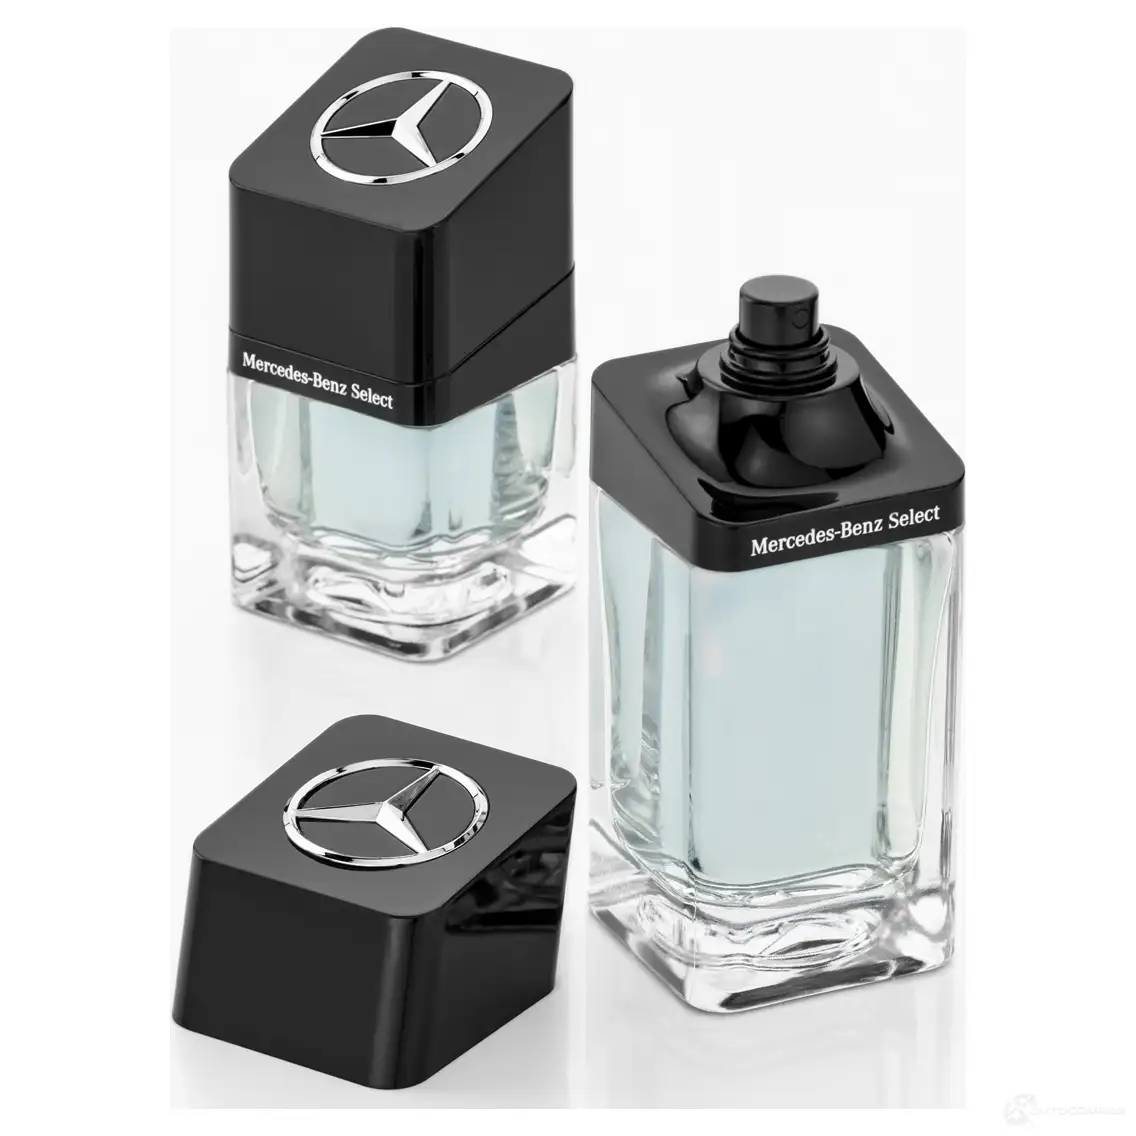 Mercedes-benz perfume select, 50 мл MERCEDES-BENZ 1436771759 B66958767 5J3H25 74 4H4 изображение 1